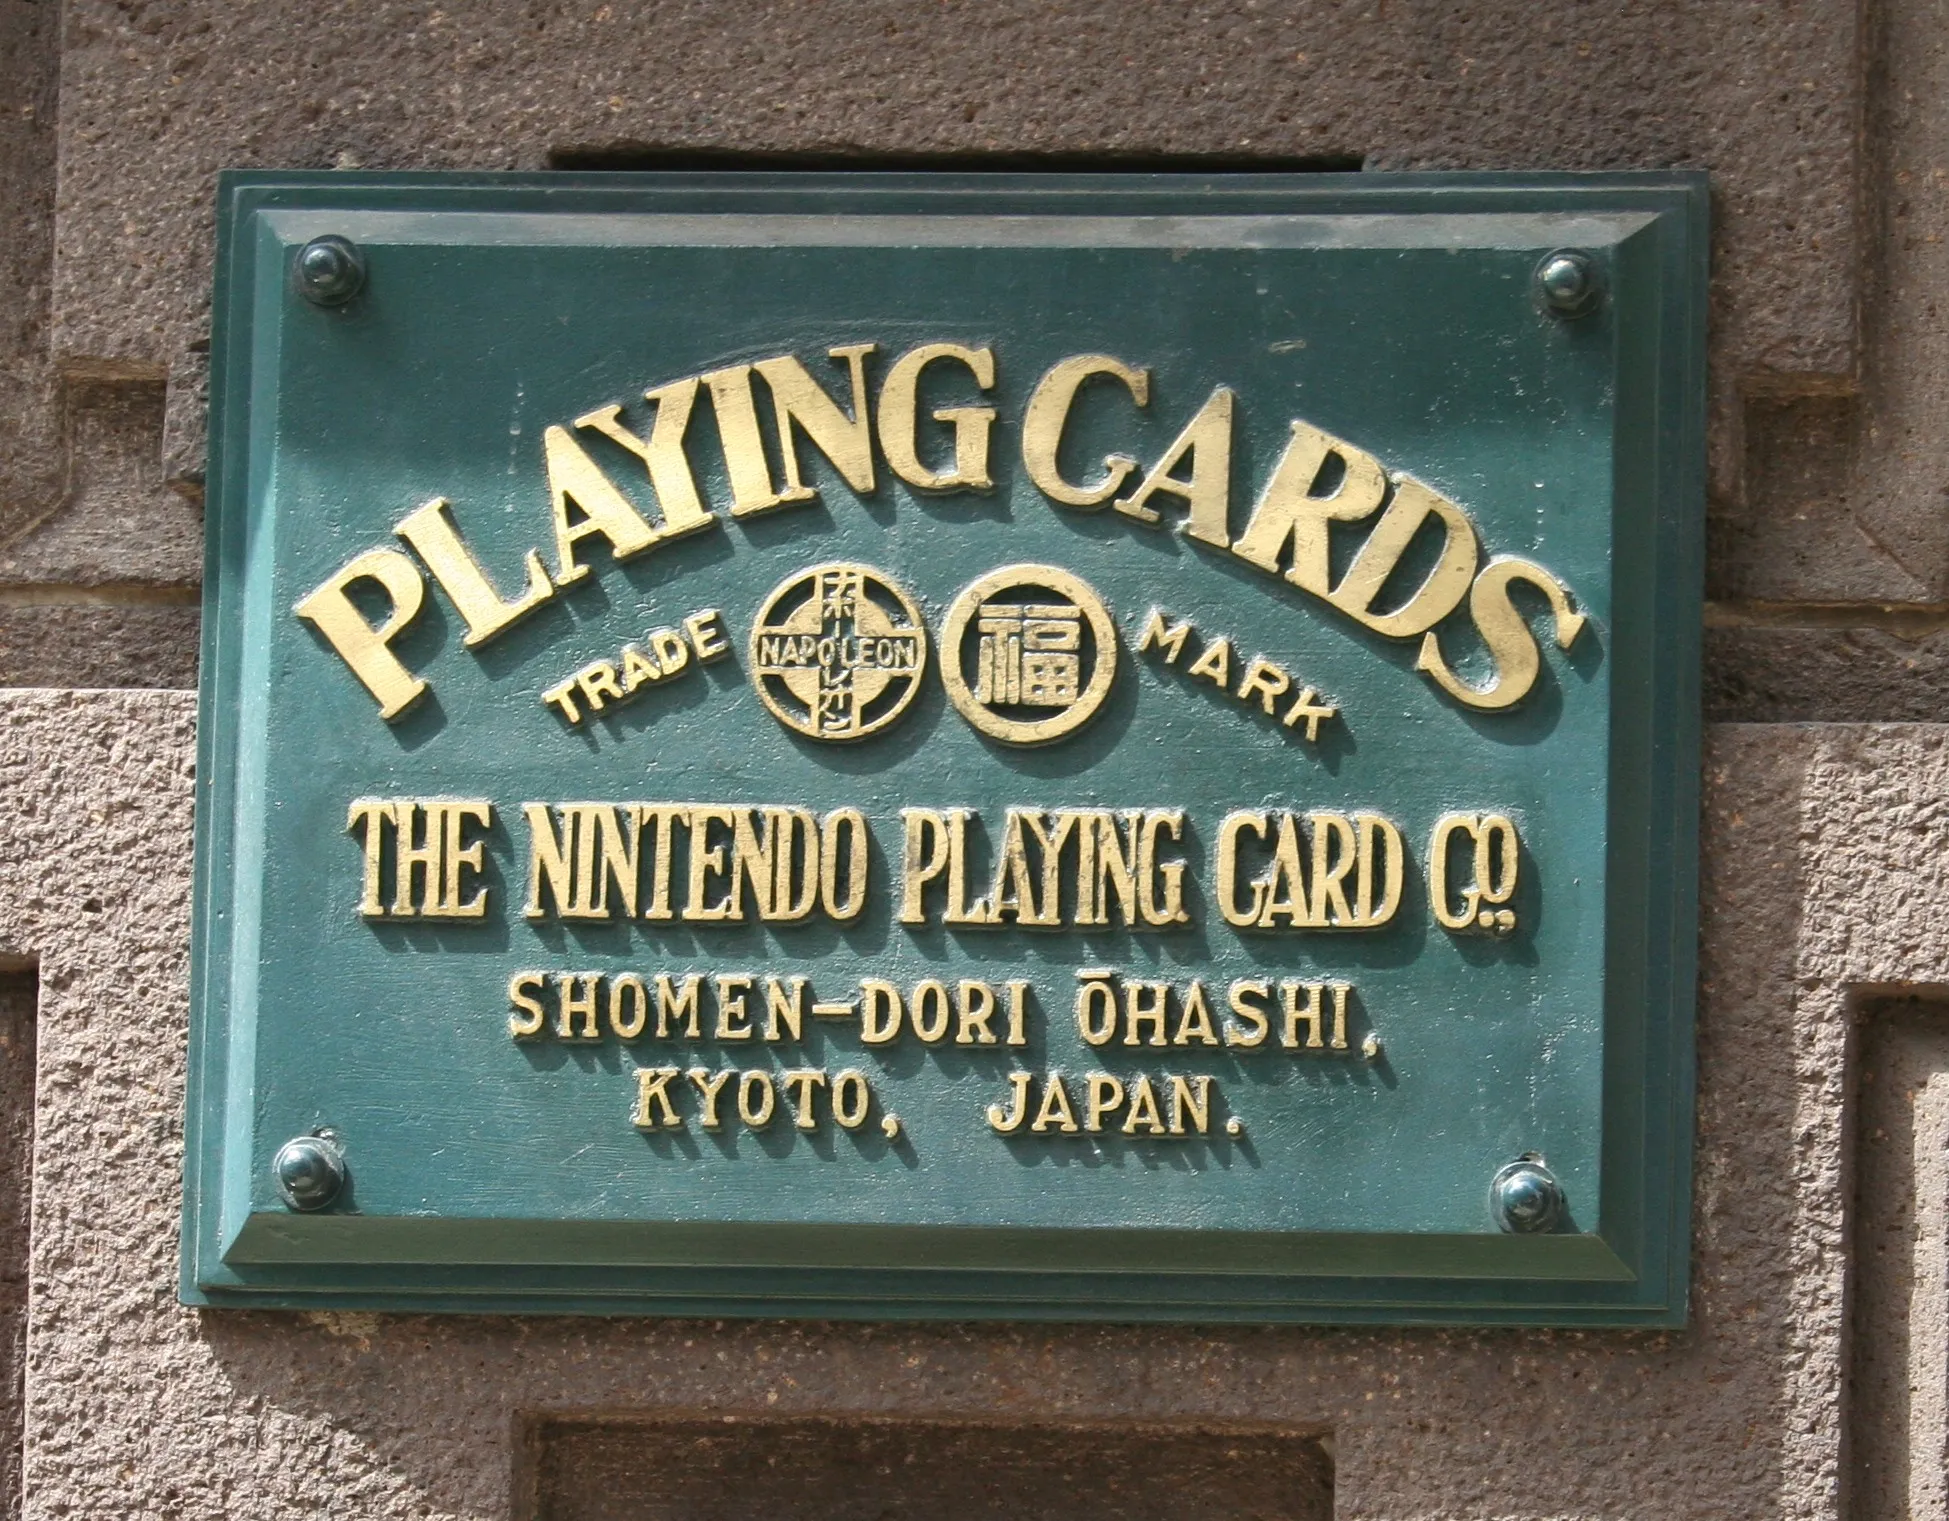 Nintendo: Una empresa fundada entre Yakuzas, apuestas y “placer”